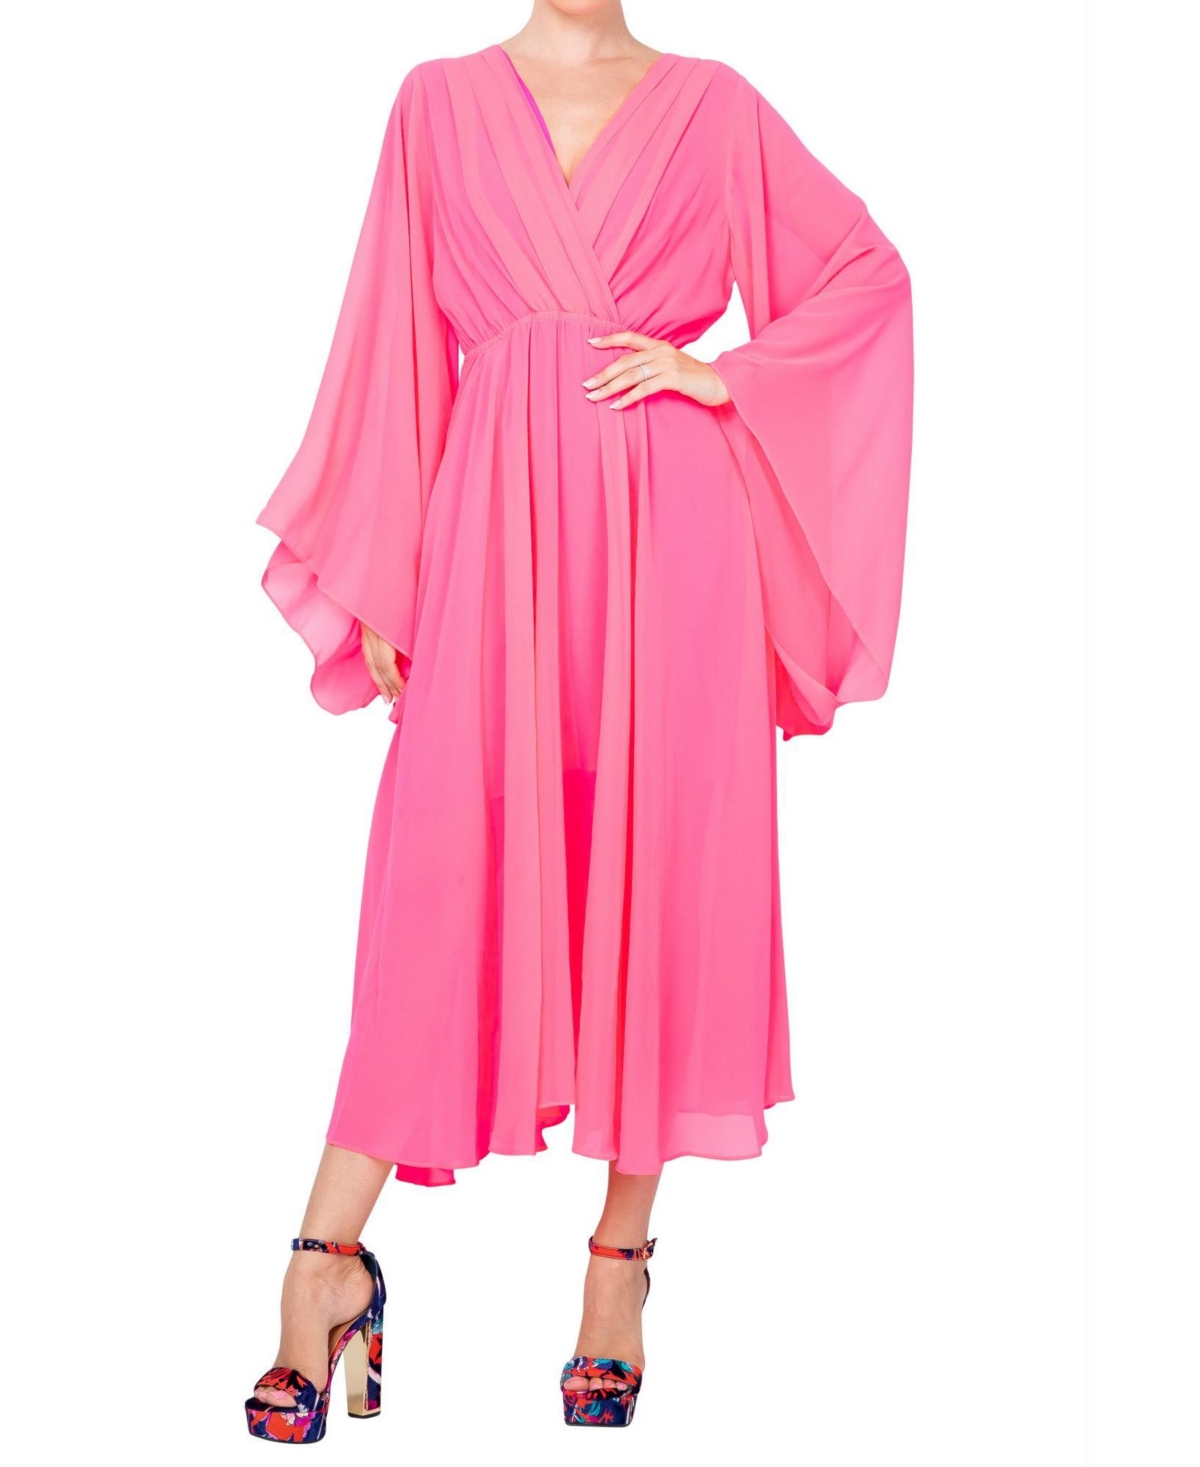 Women's Sunset Maxi Dress - Neon pink